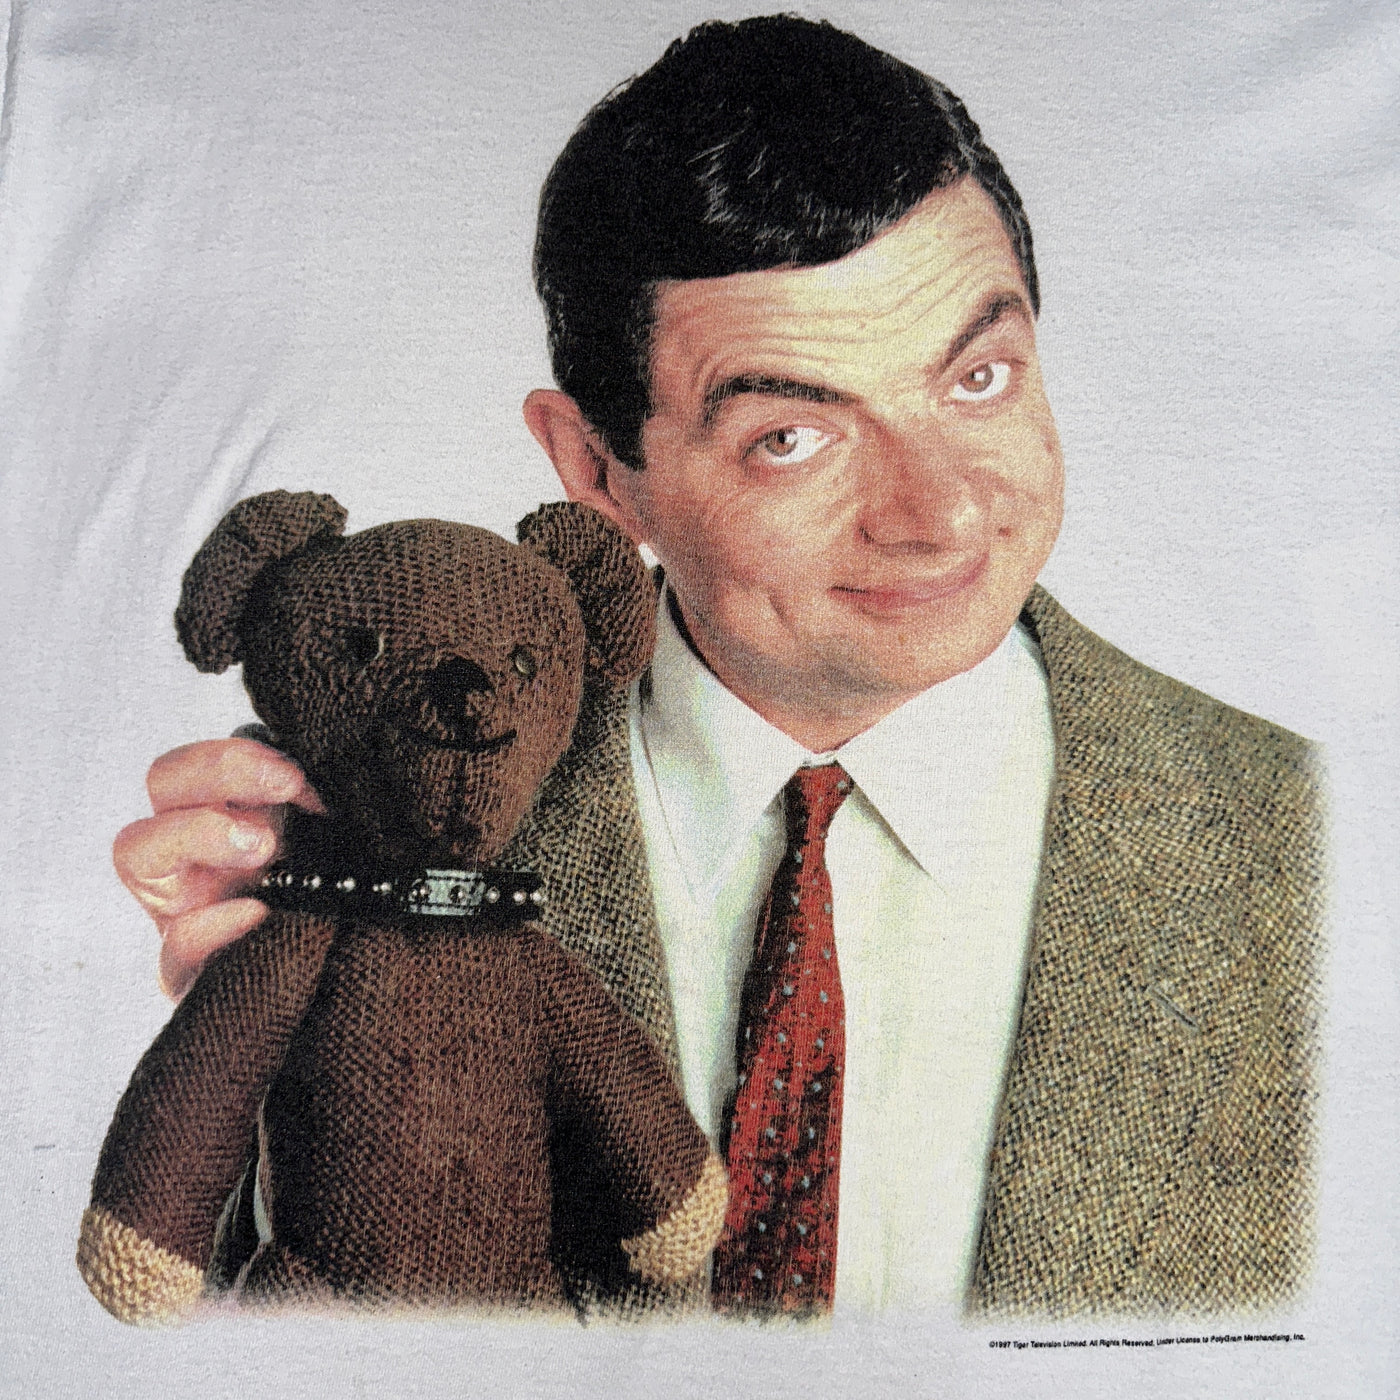 '97 Mr. Bean The Movie Rowan Atkinson T-shirt sz L